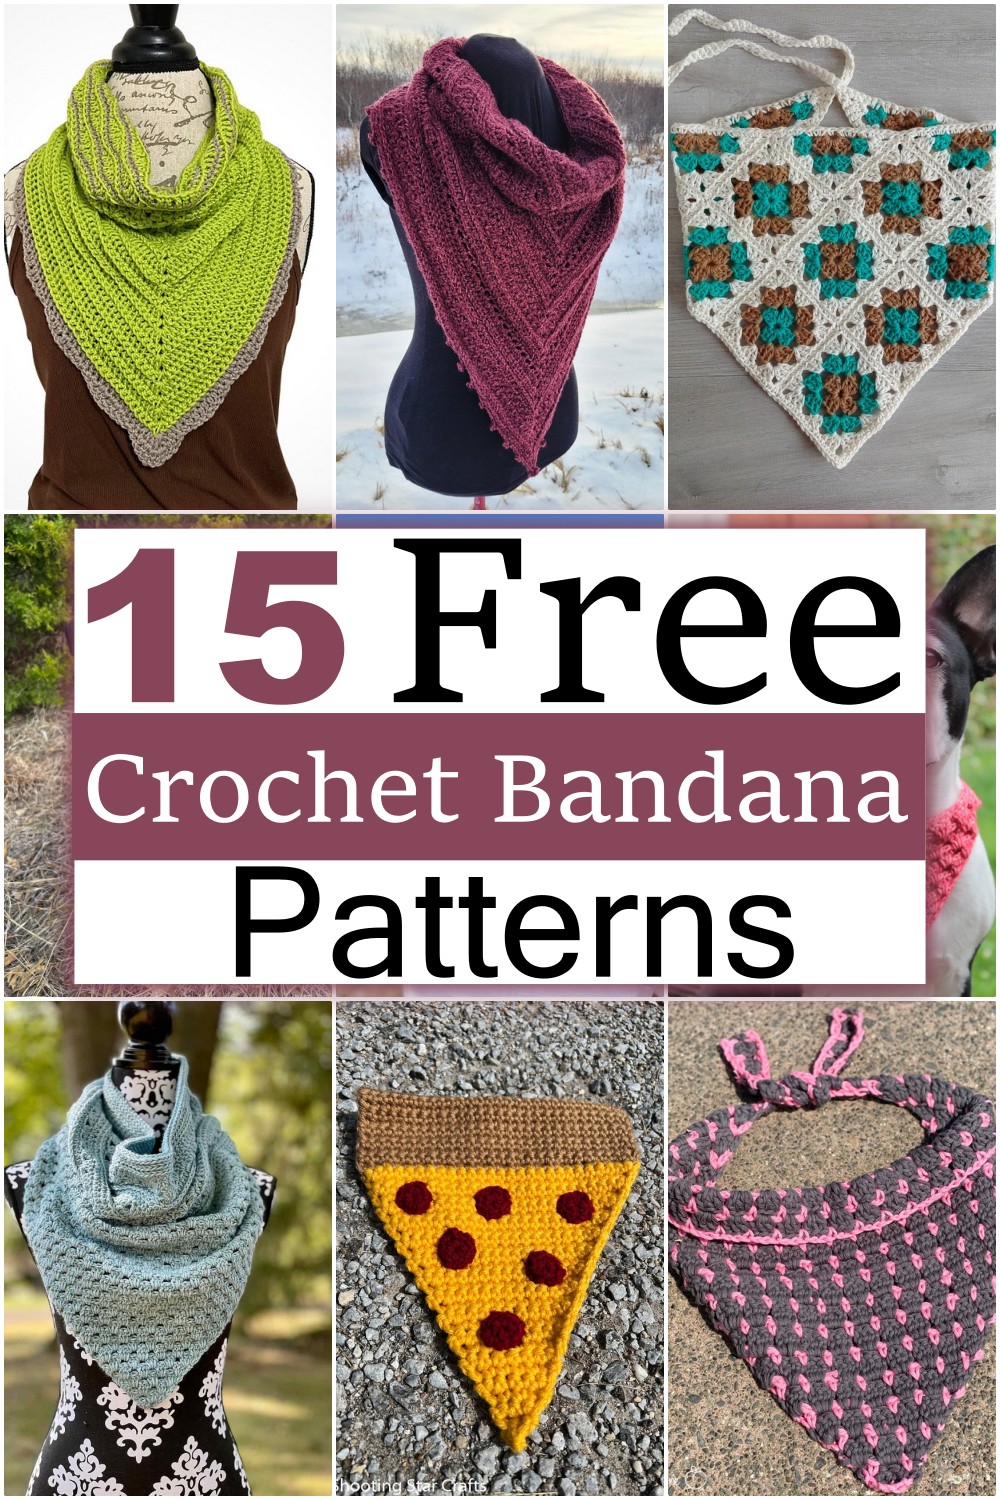 Crochet Bandana Patterns